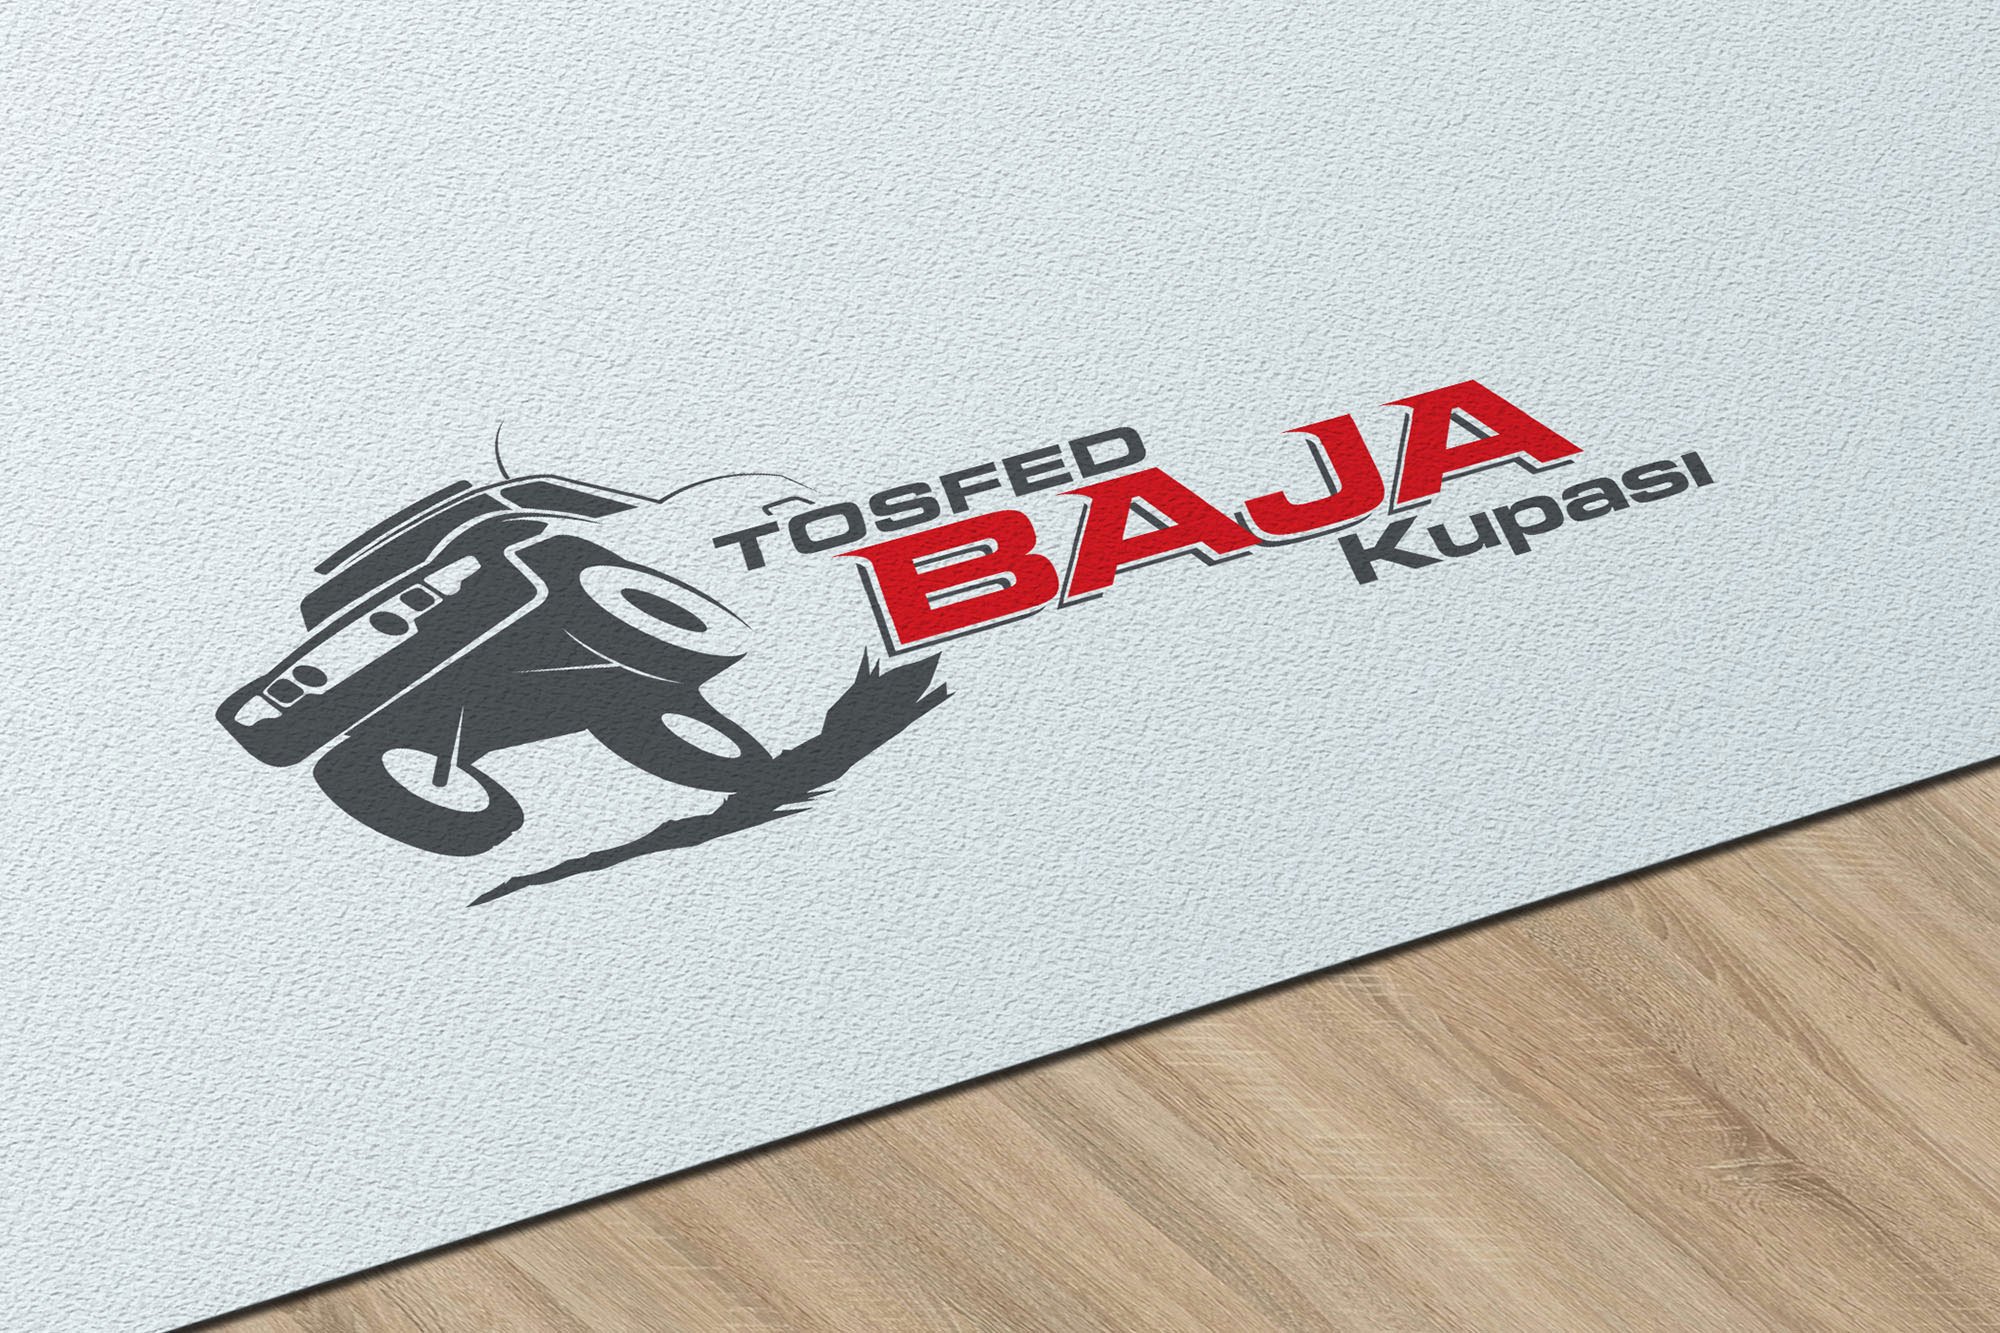 Tosfed Baja Cup Logo